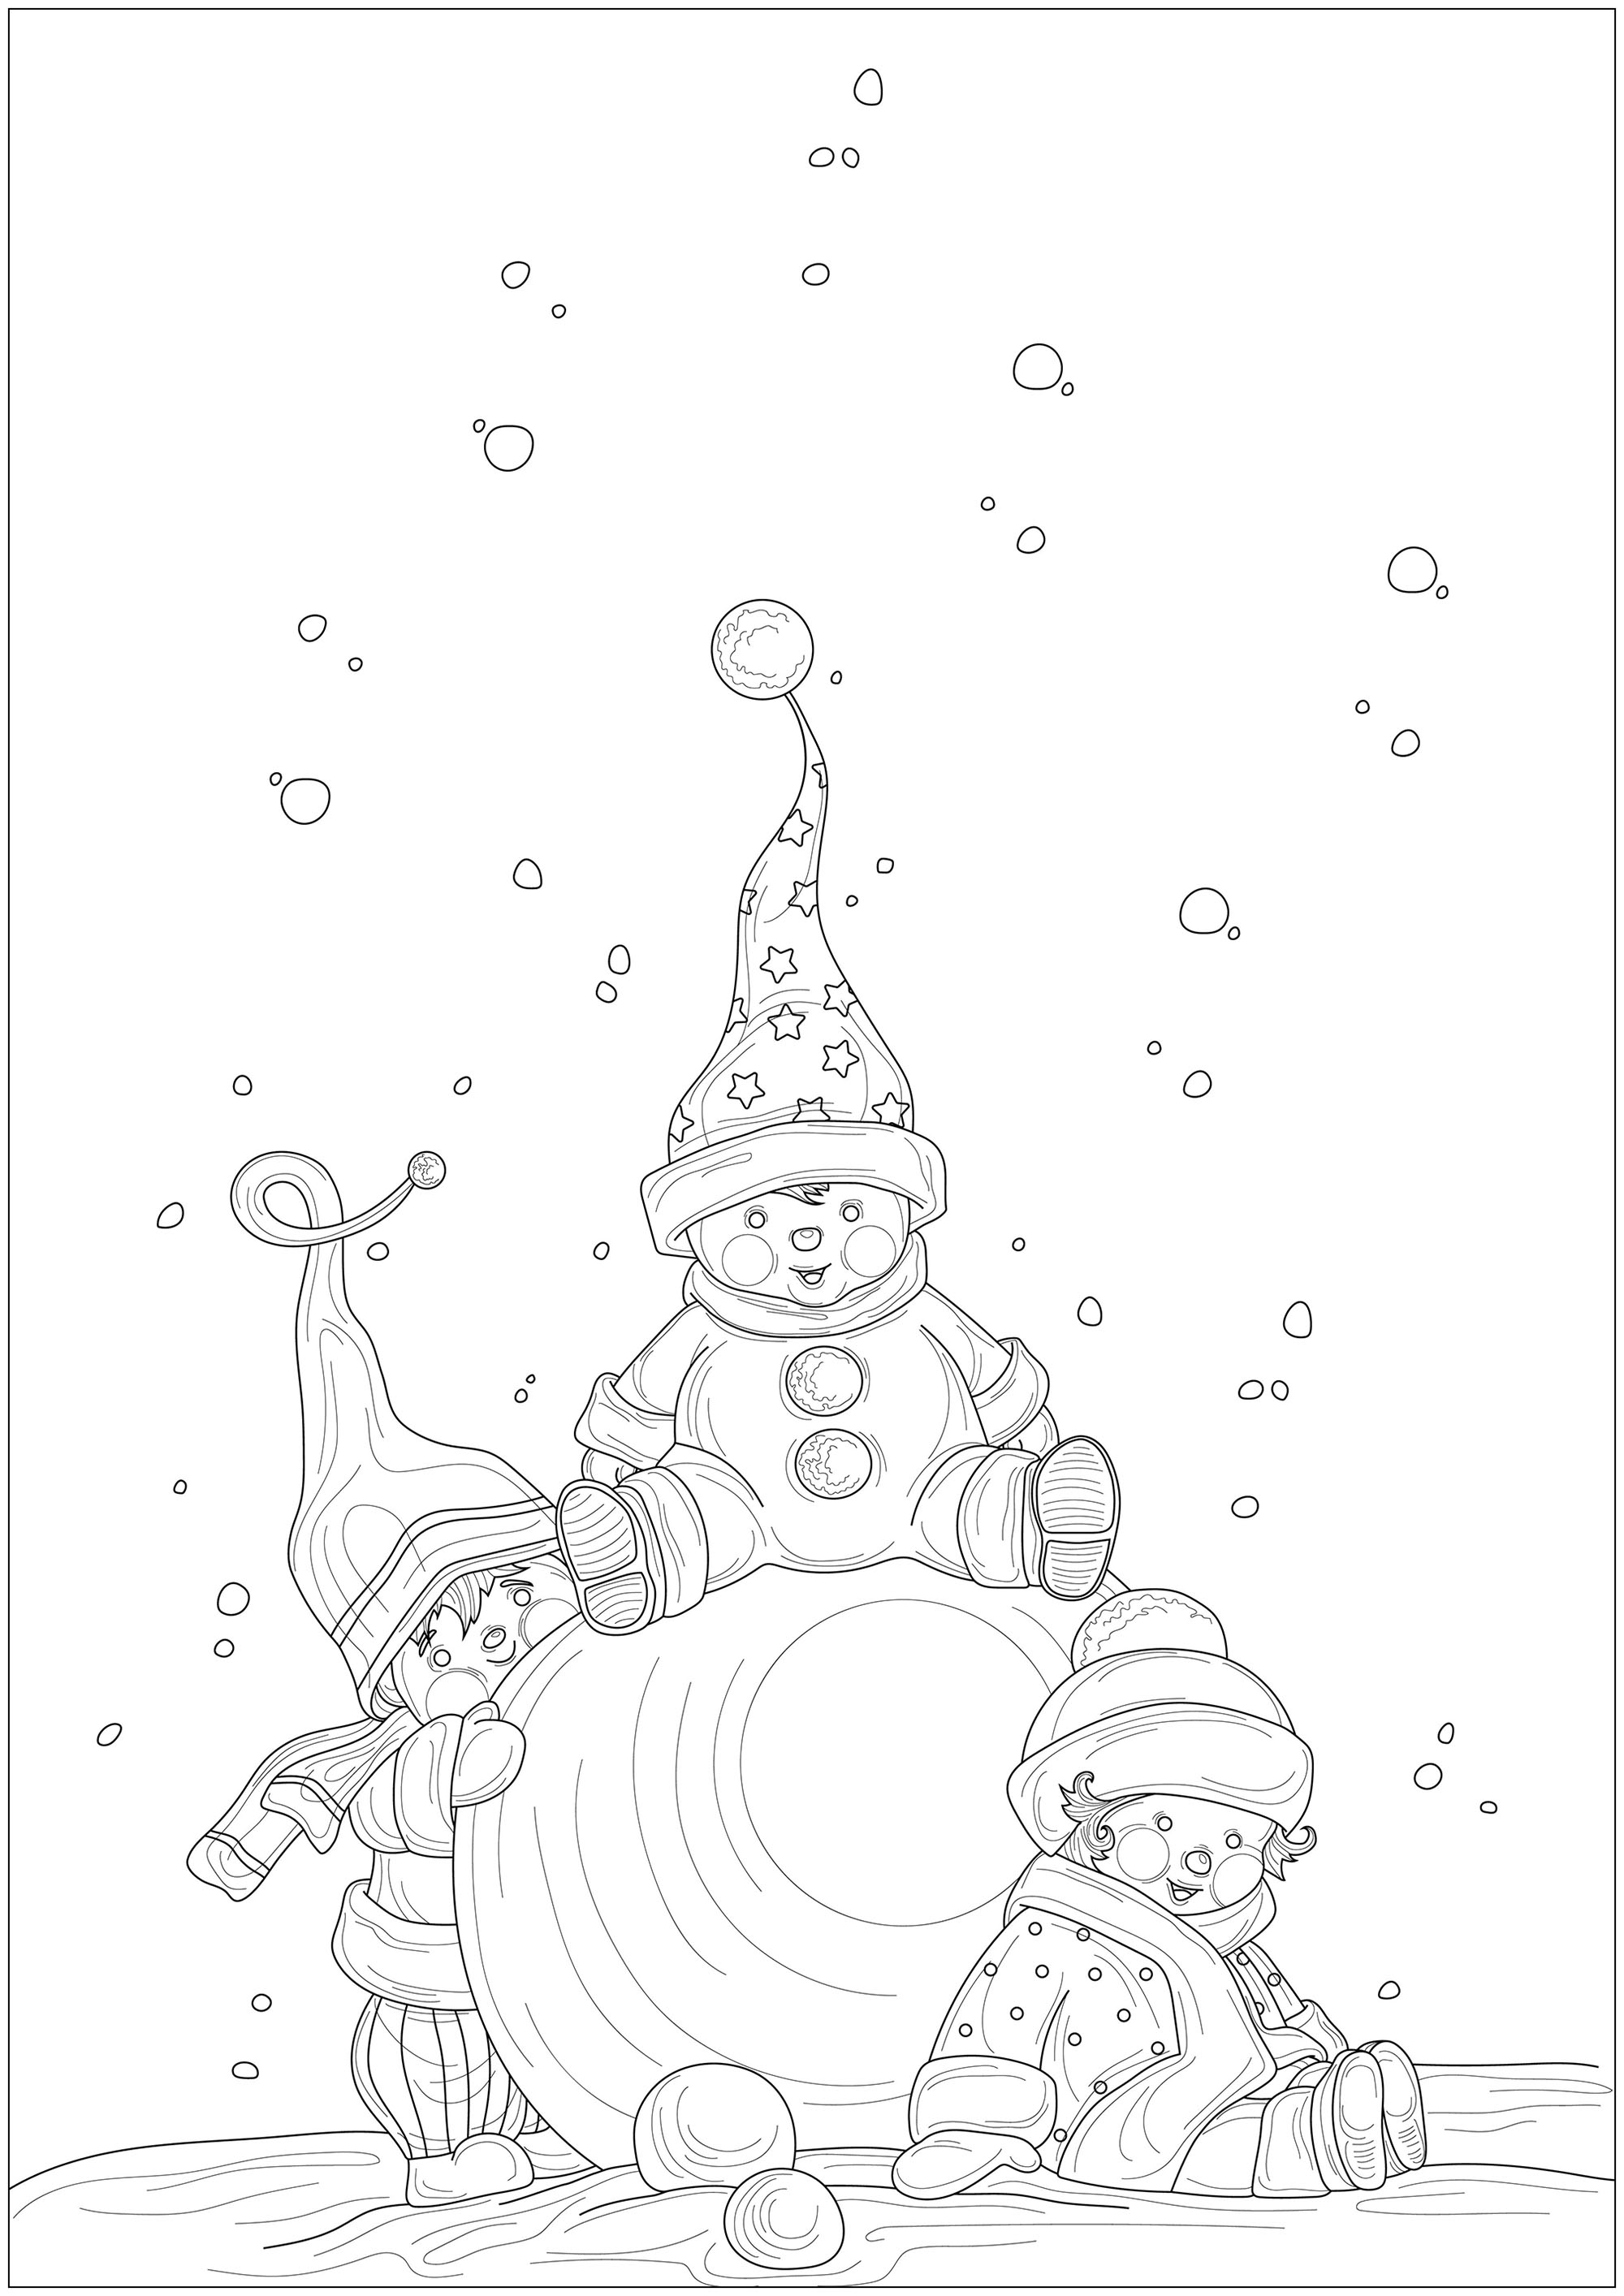 Tre bambini con cappelli e sciarpe che giocano con una grande palla di neve, con l'aspetto di elfi